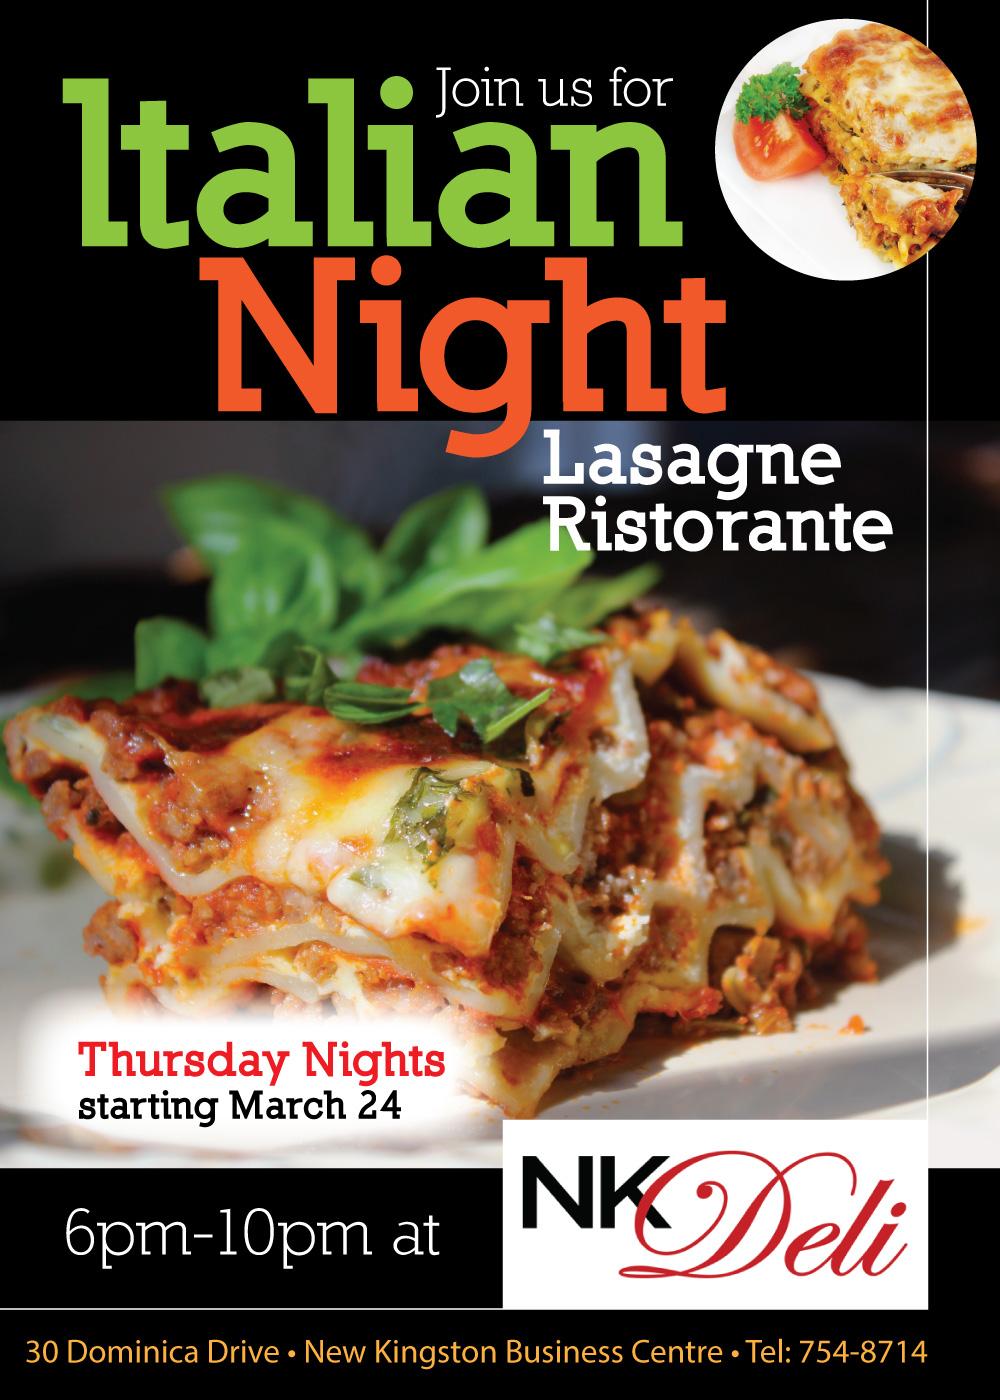 ITALIAN NIGHT - LASAGNE RESTORANTE   Thursday Nights